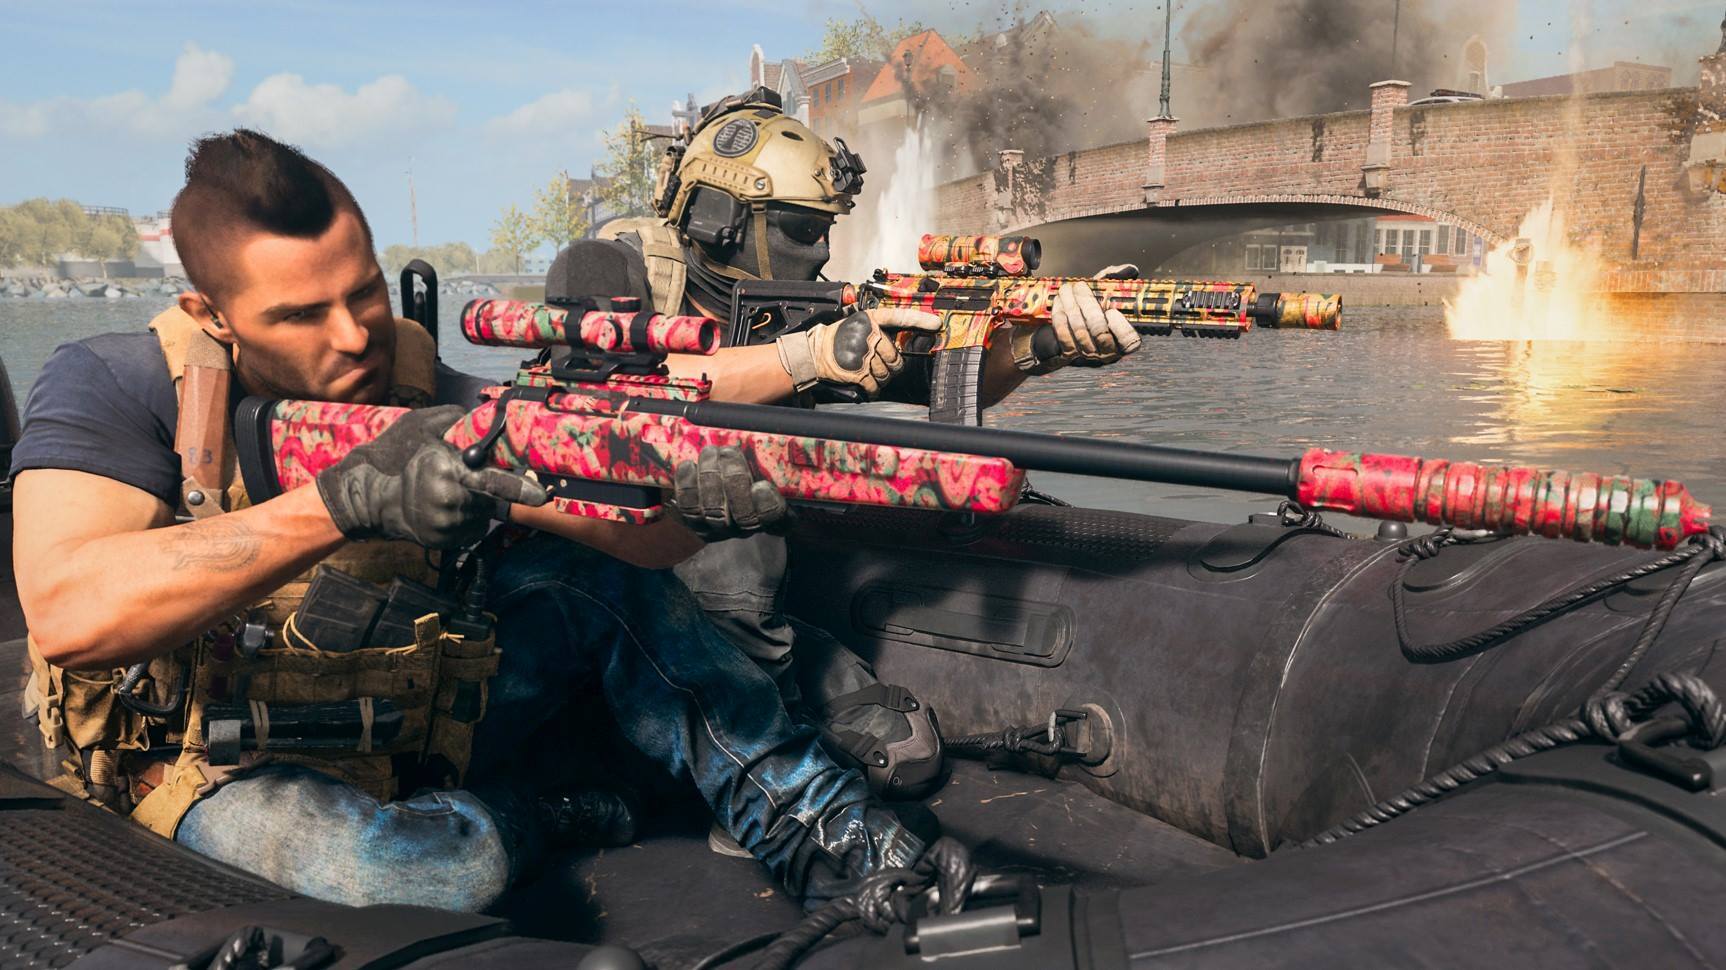 Liberar Todas As Camuflagens E Personagens Warzone - Call Of Duty Cod - DFG